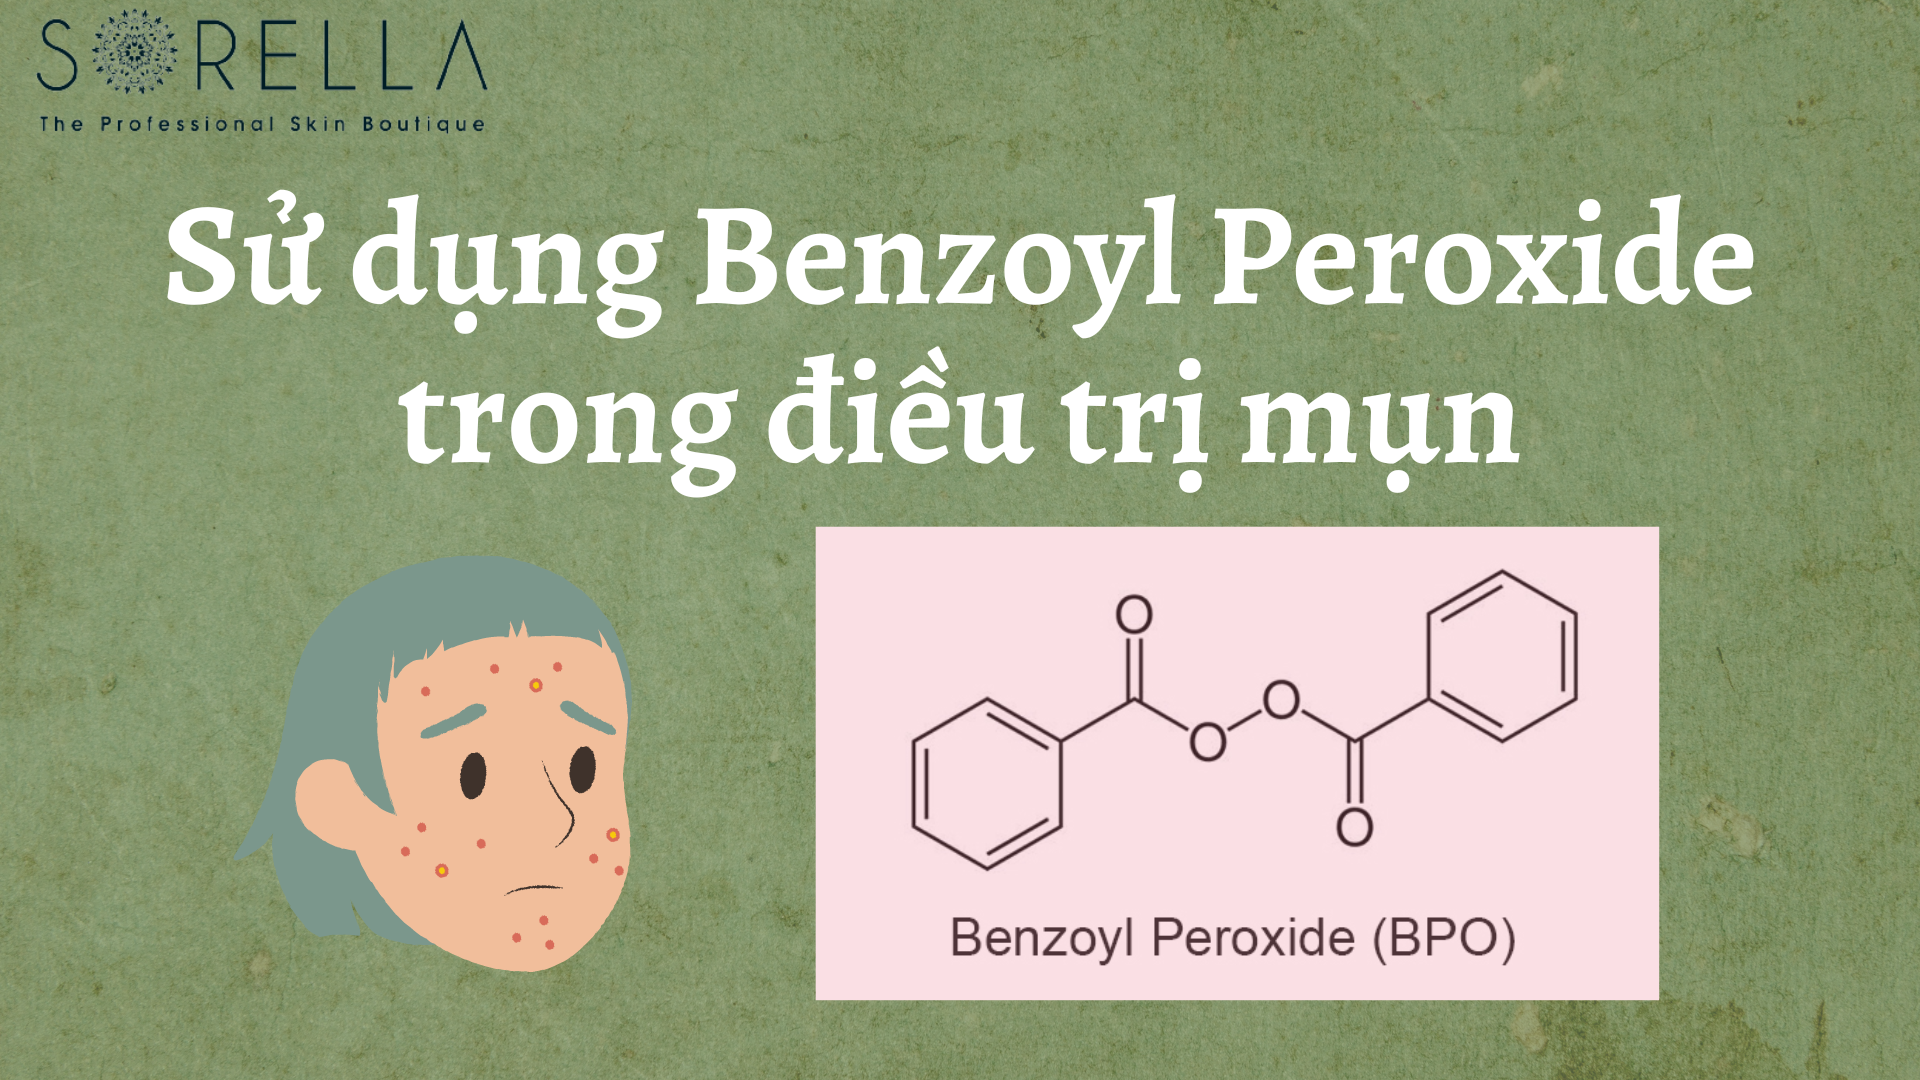 Sử dụng Benzoyl Peroxide trong điều trị mụn